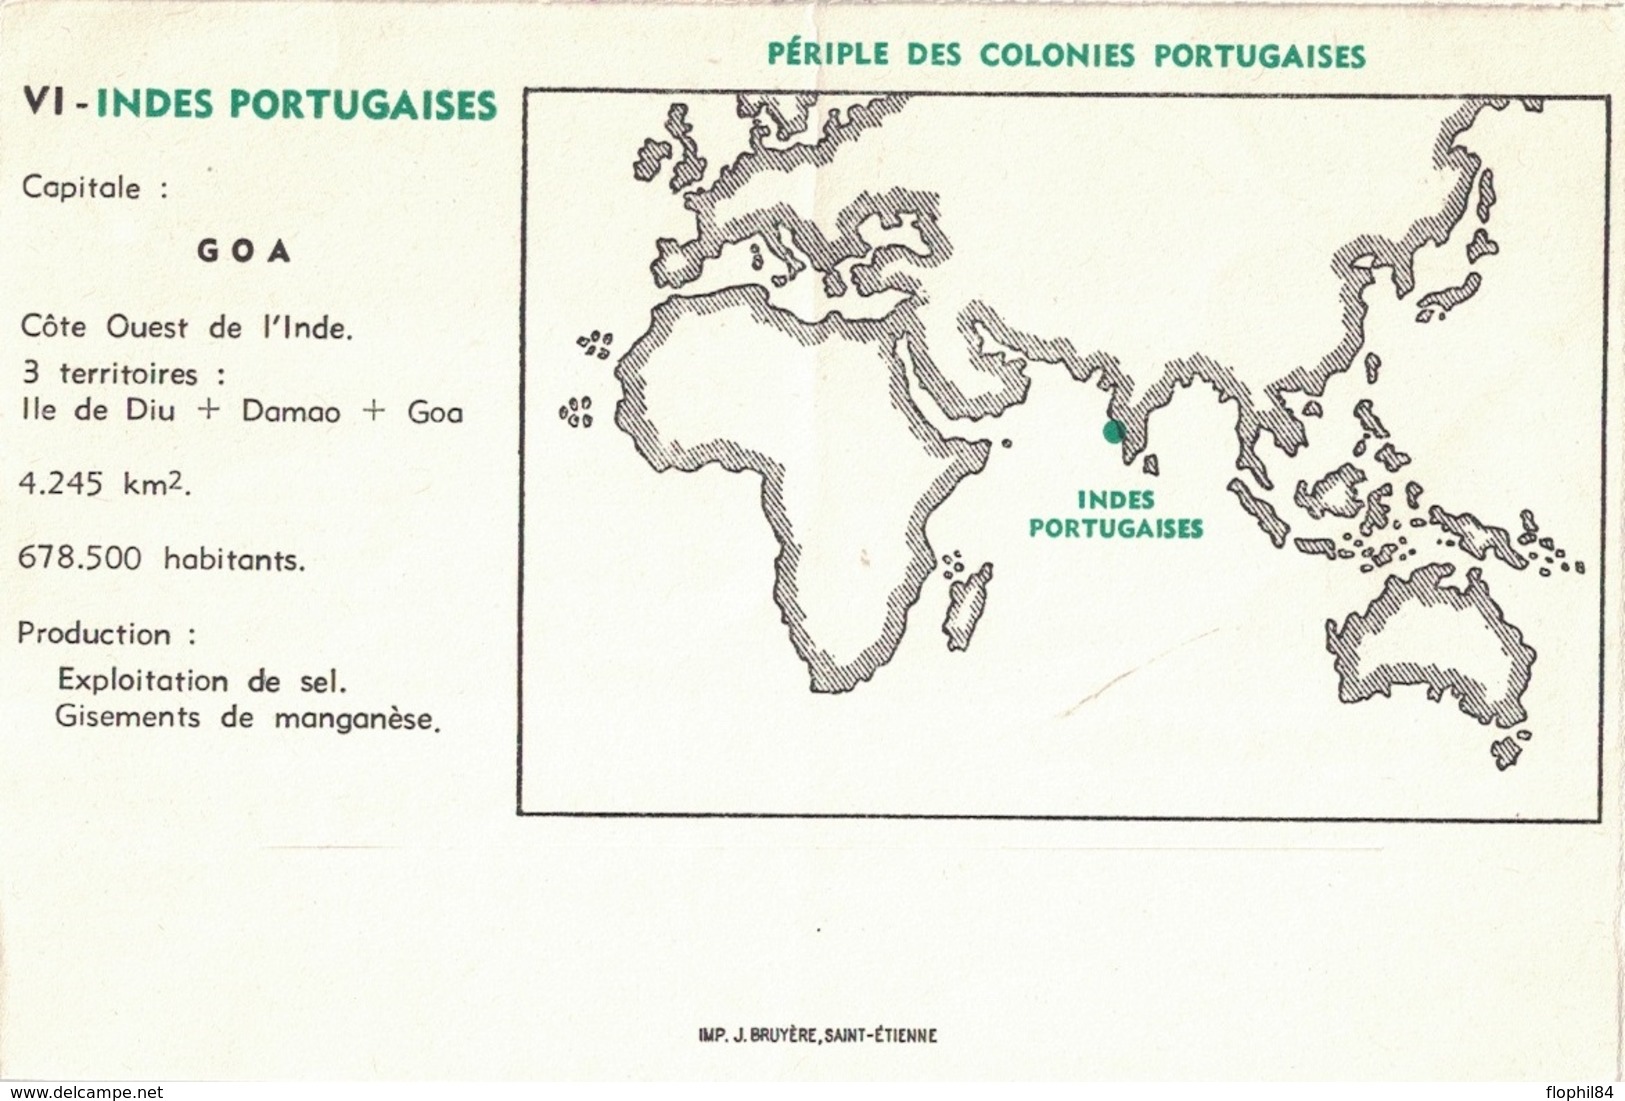 INDE PORTUGAISE - GOA - 1957 - ENVELOPPE PUBLICITAIRE LABORATOIRES BOCQUET A DIEPPE -SEINE MARITIME - PUERICRINE. - India Portoghese